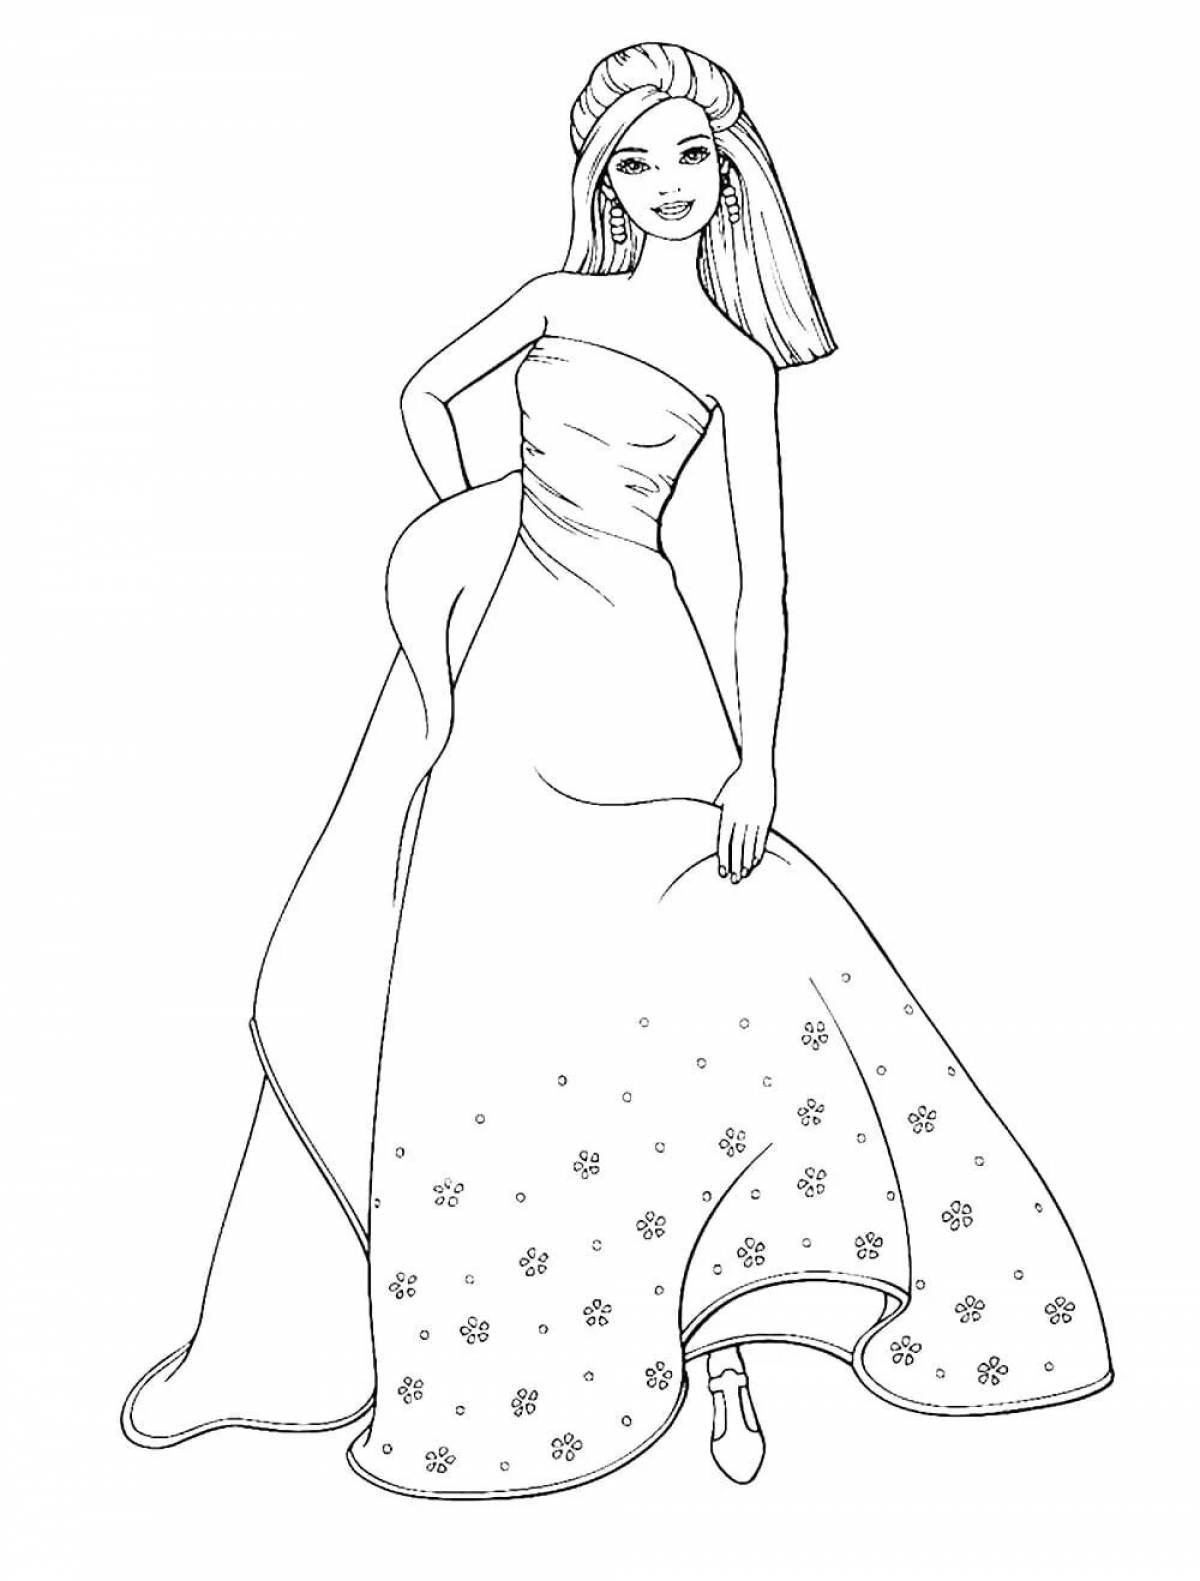 Раскраска девочка в платье